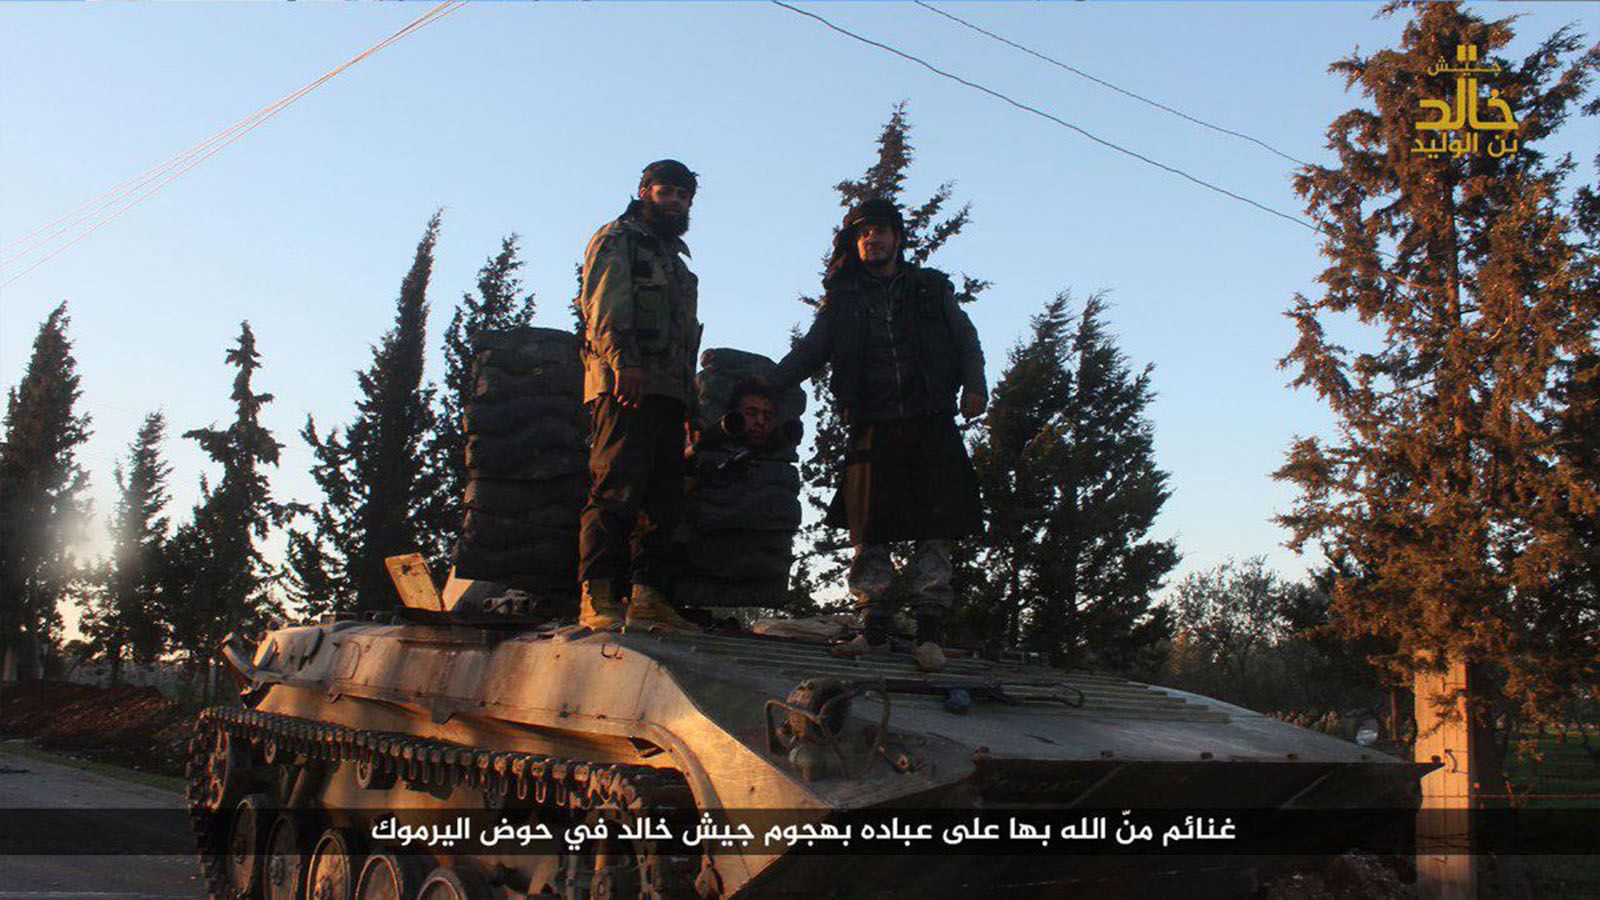 ماذا ألقت مروحيات النظام لـ"داعش" في درعا؟